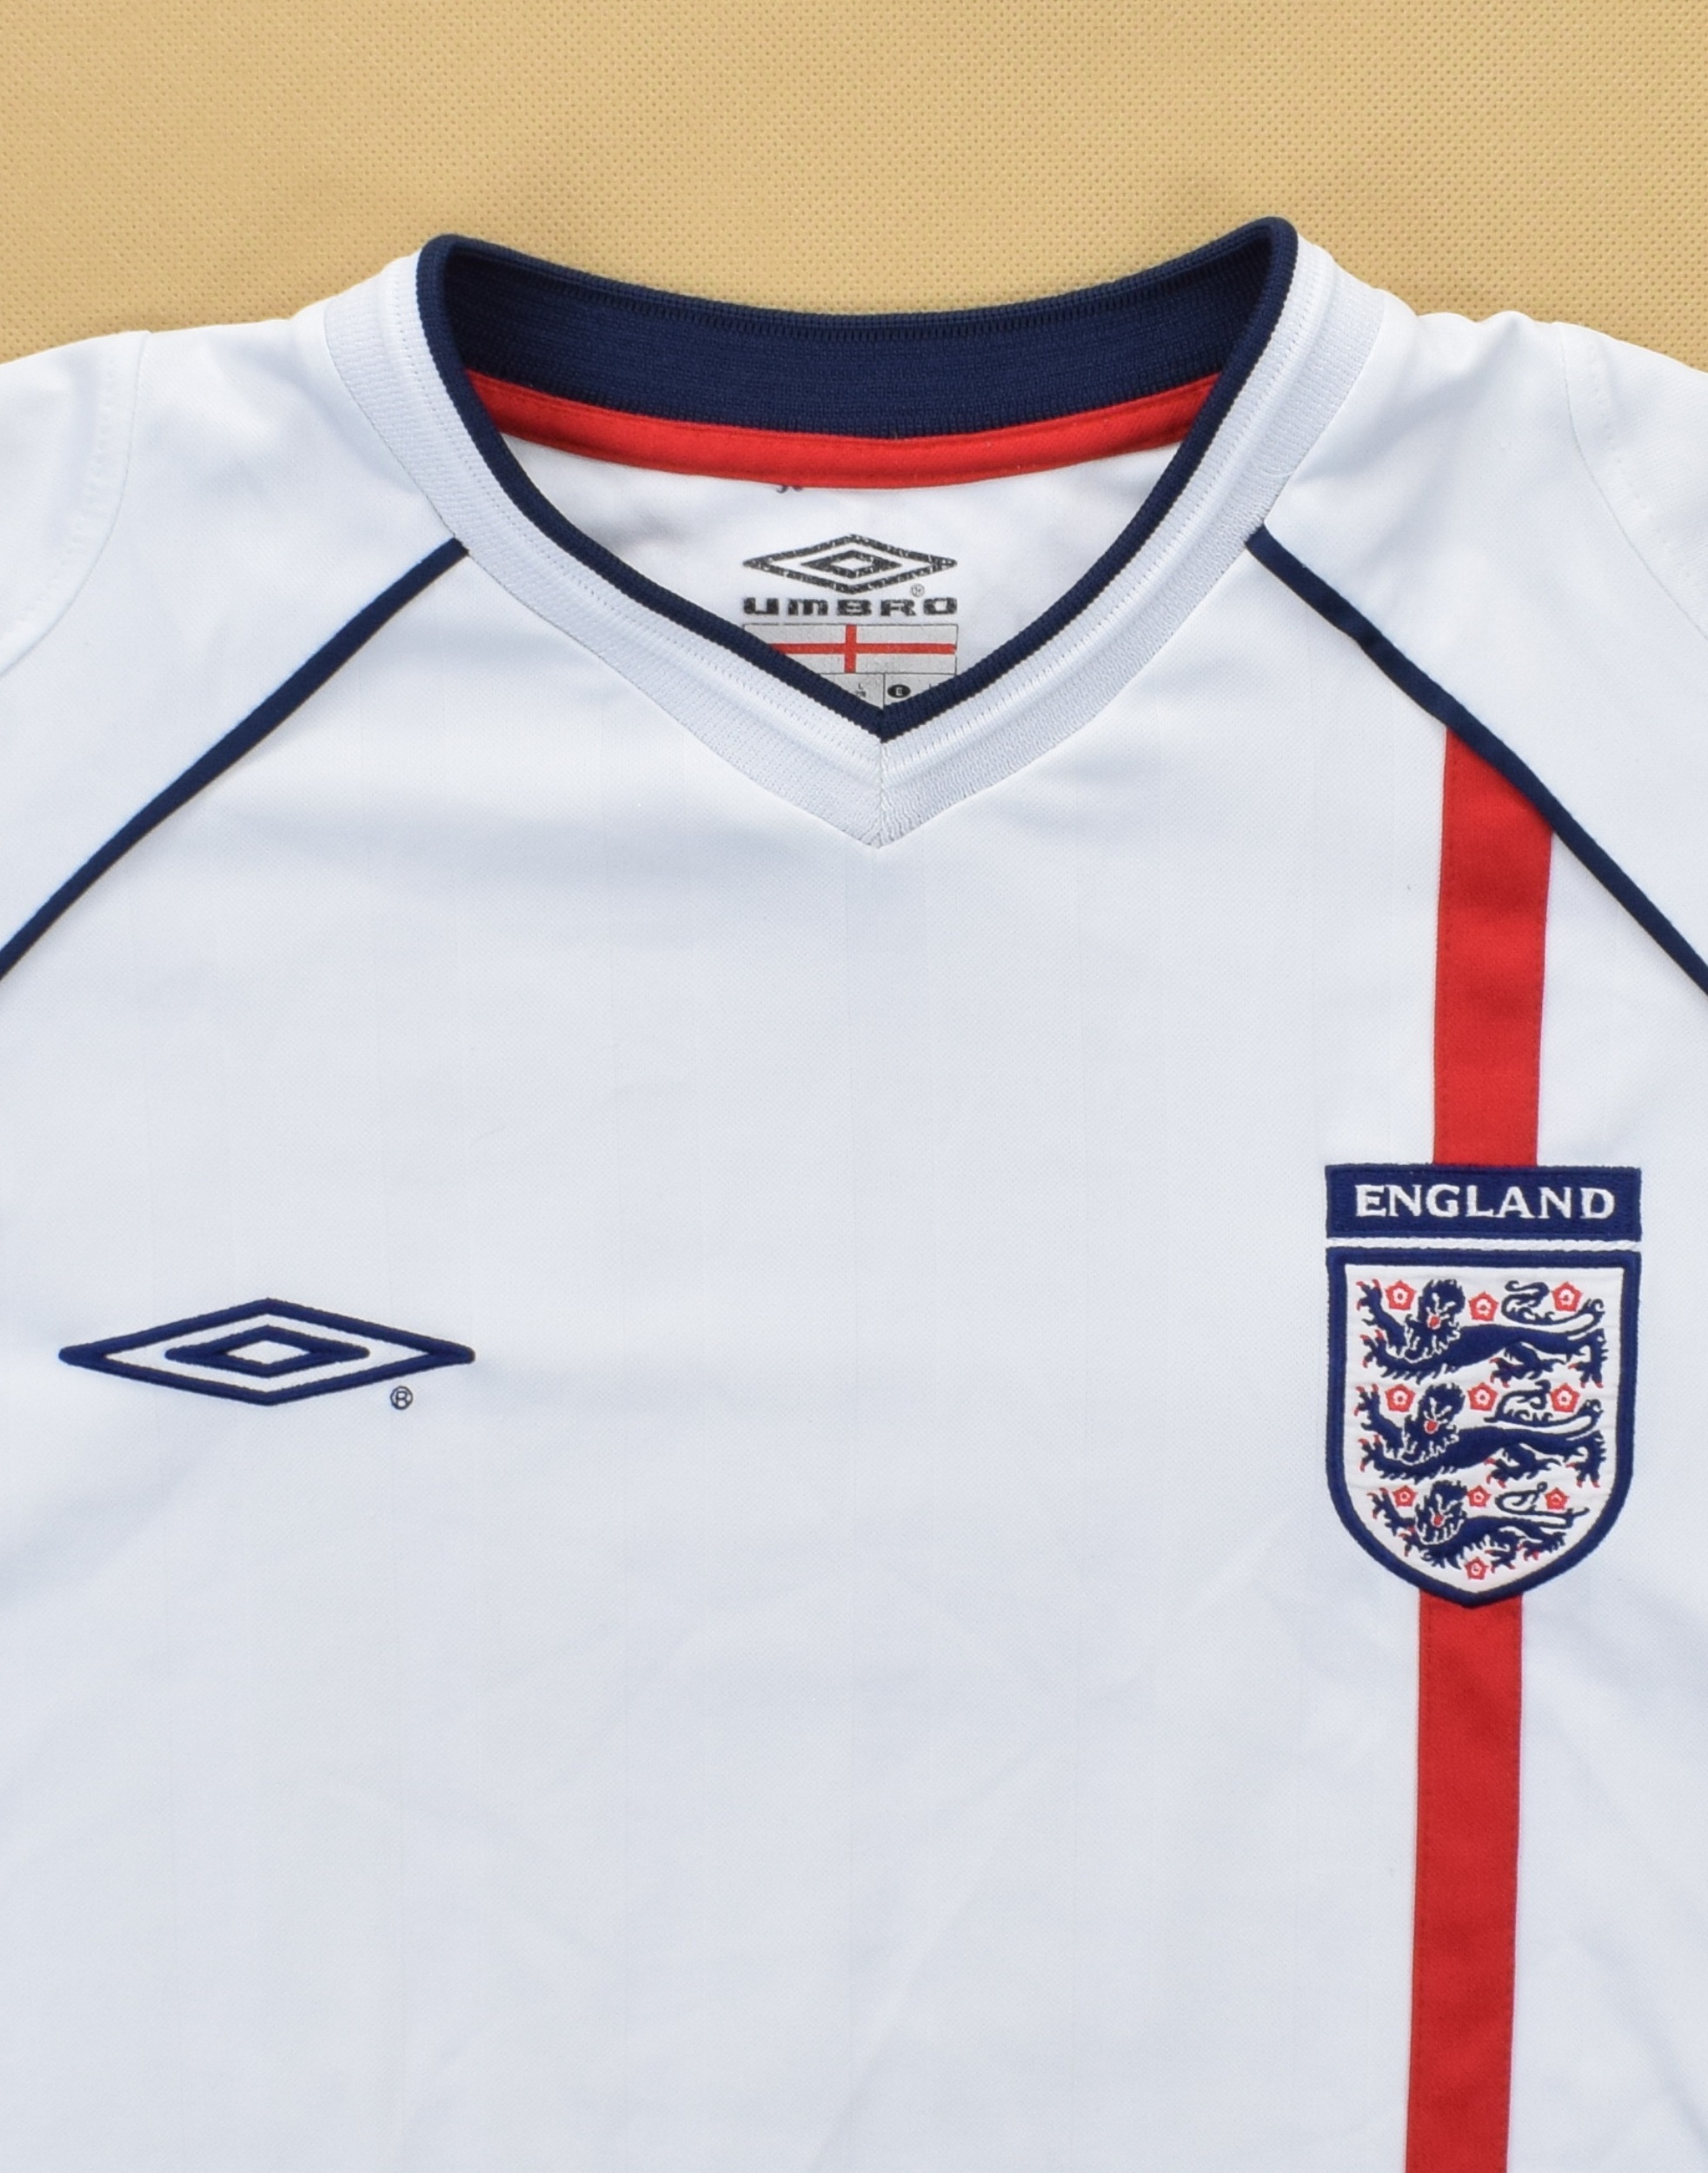 Umbro England 2001-03 サード 3rdサッカー tシャツ